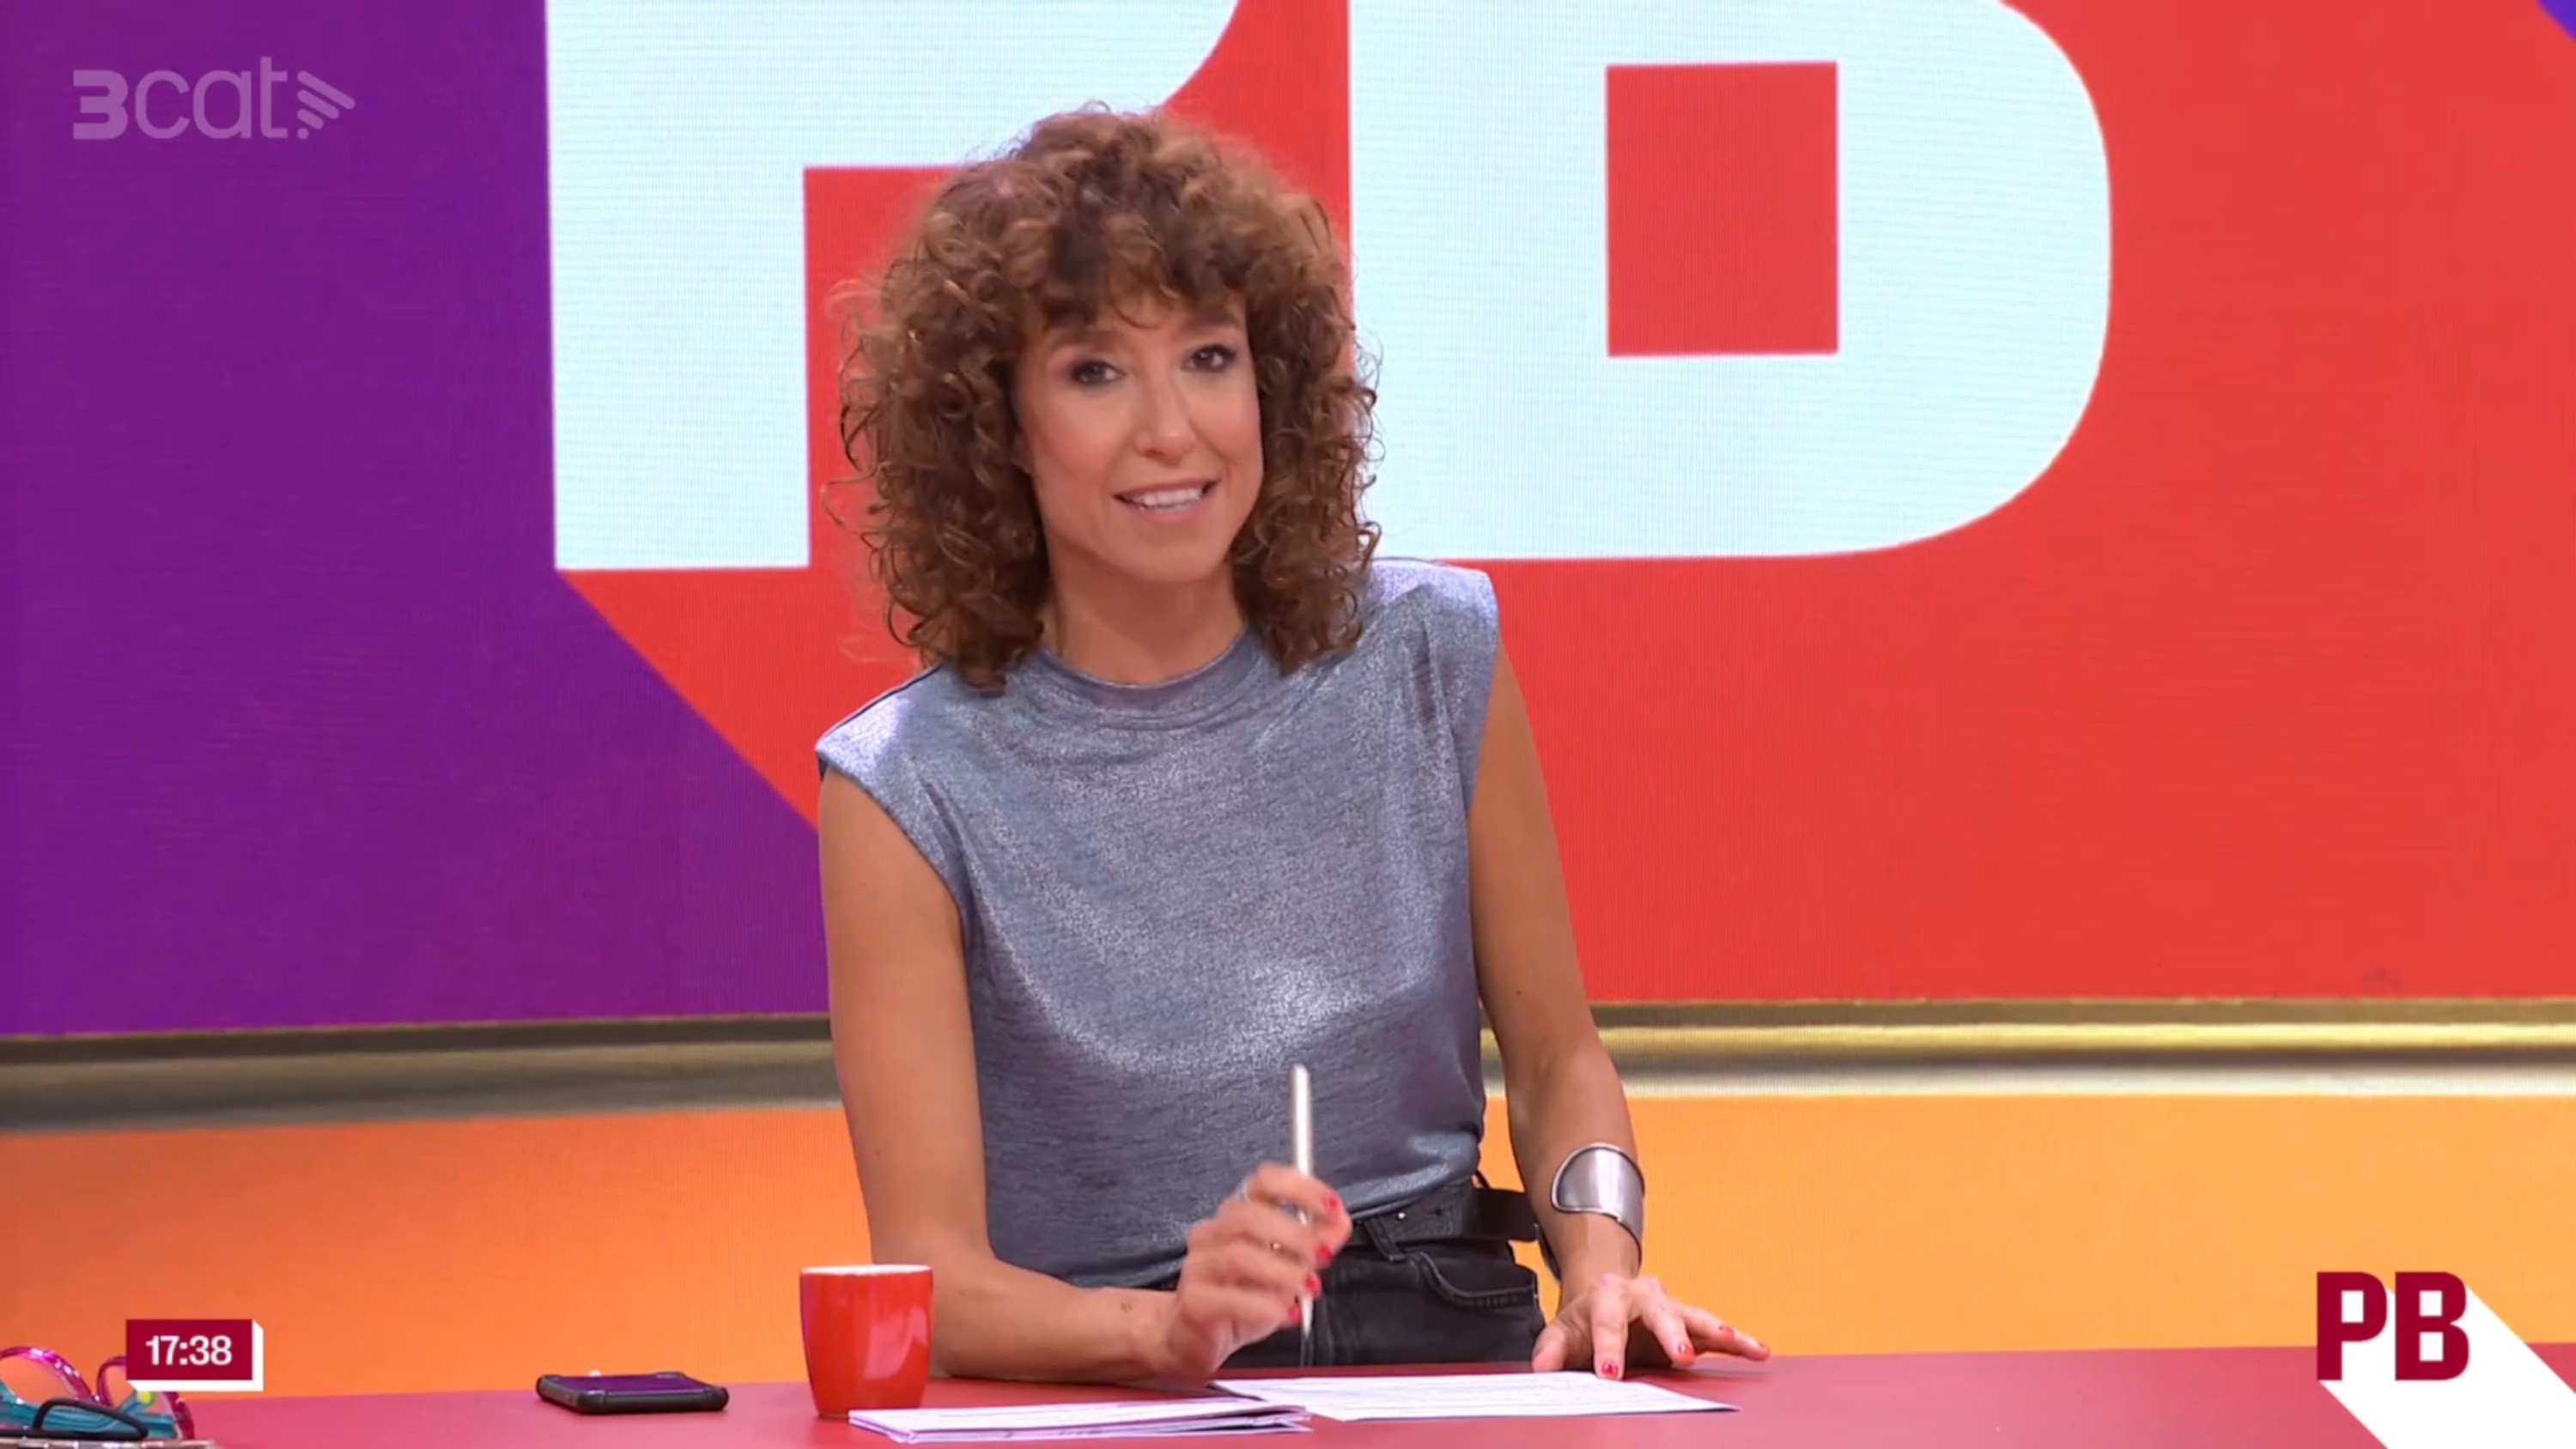 Destrozan TV3 por invitar a una VIP del famoseo muy española: "Pena, vergüenza"